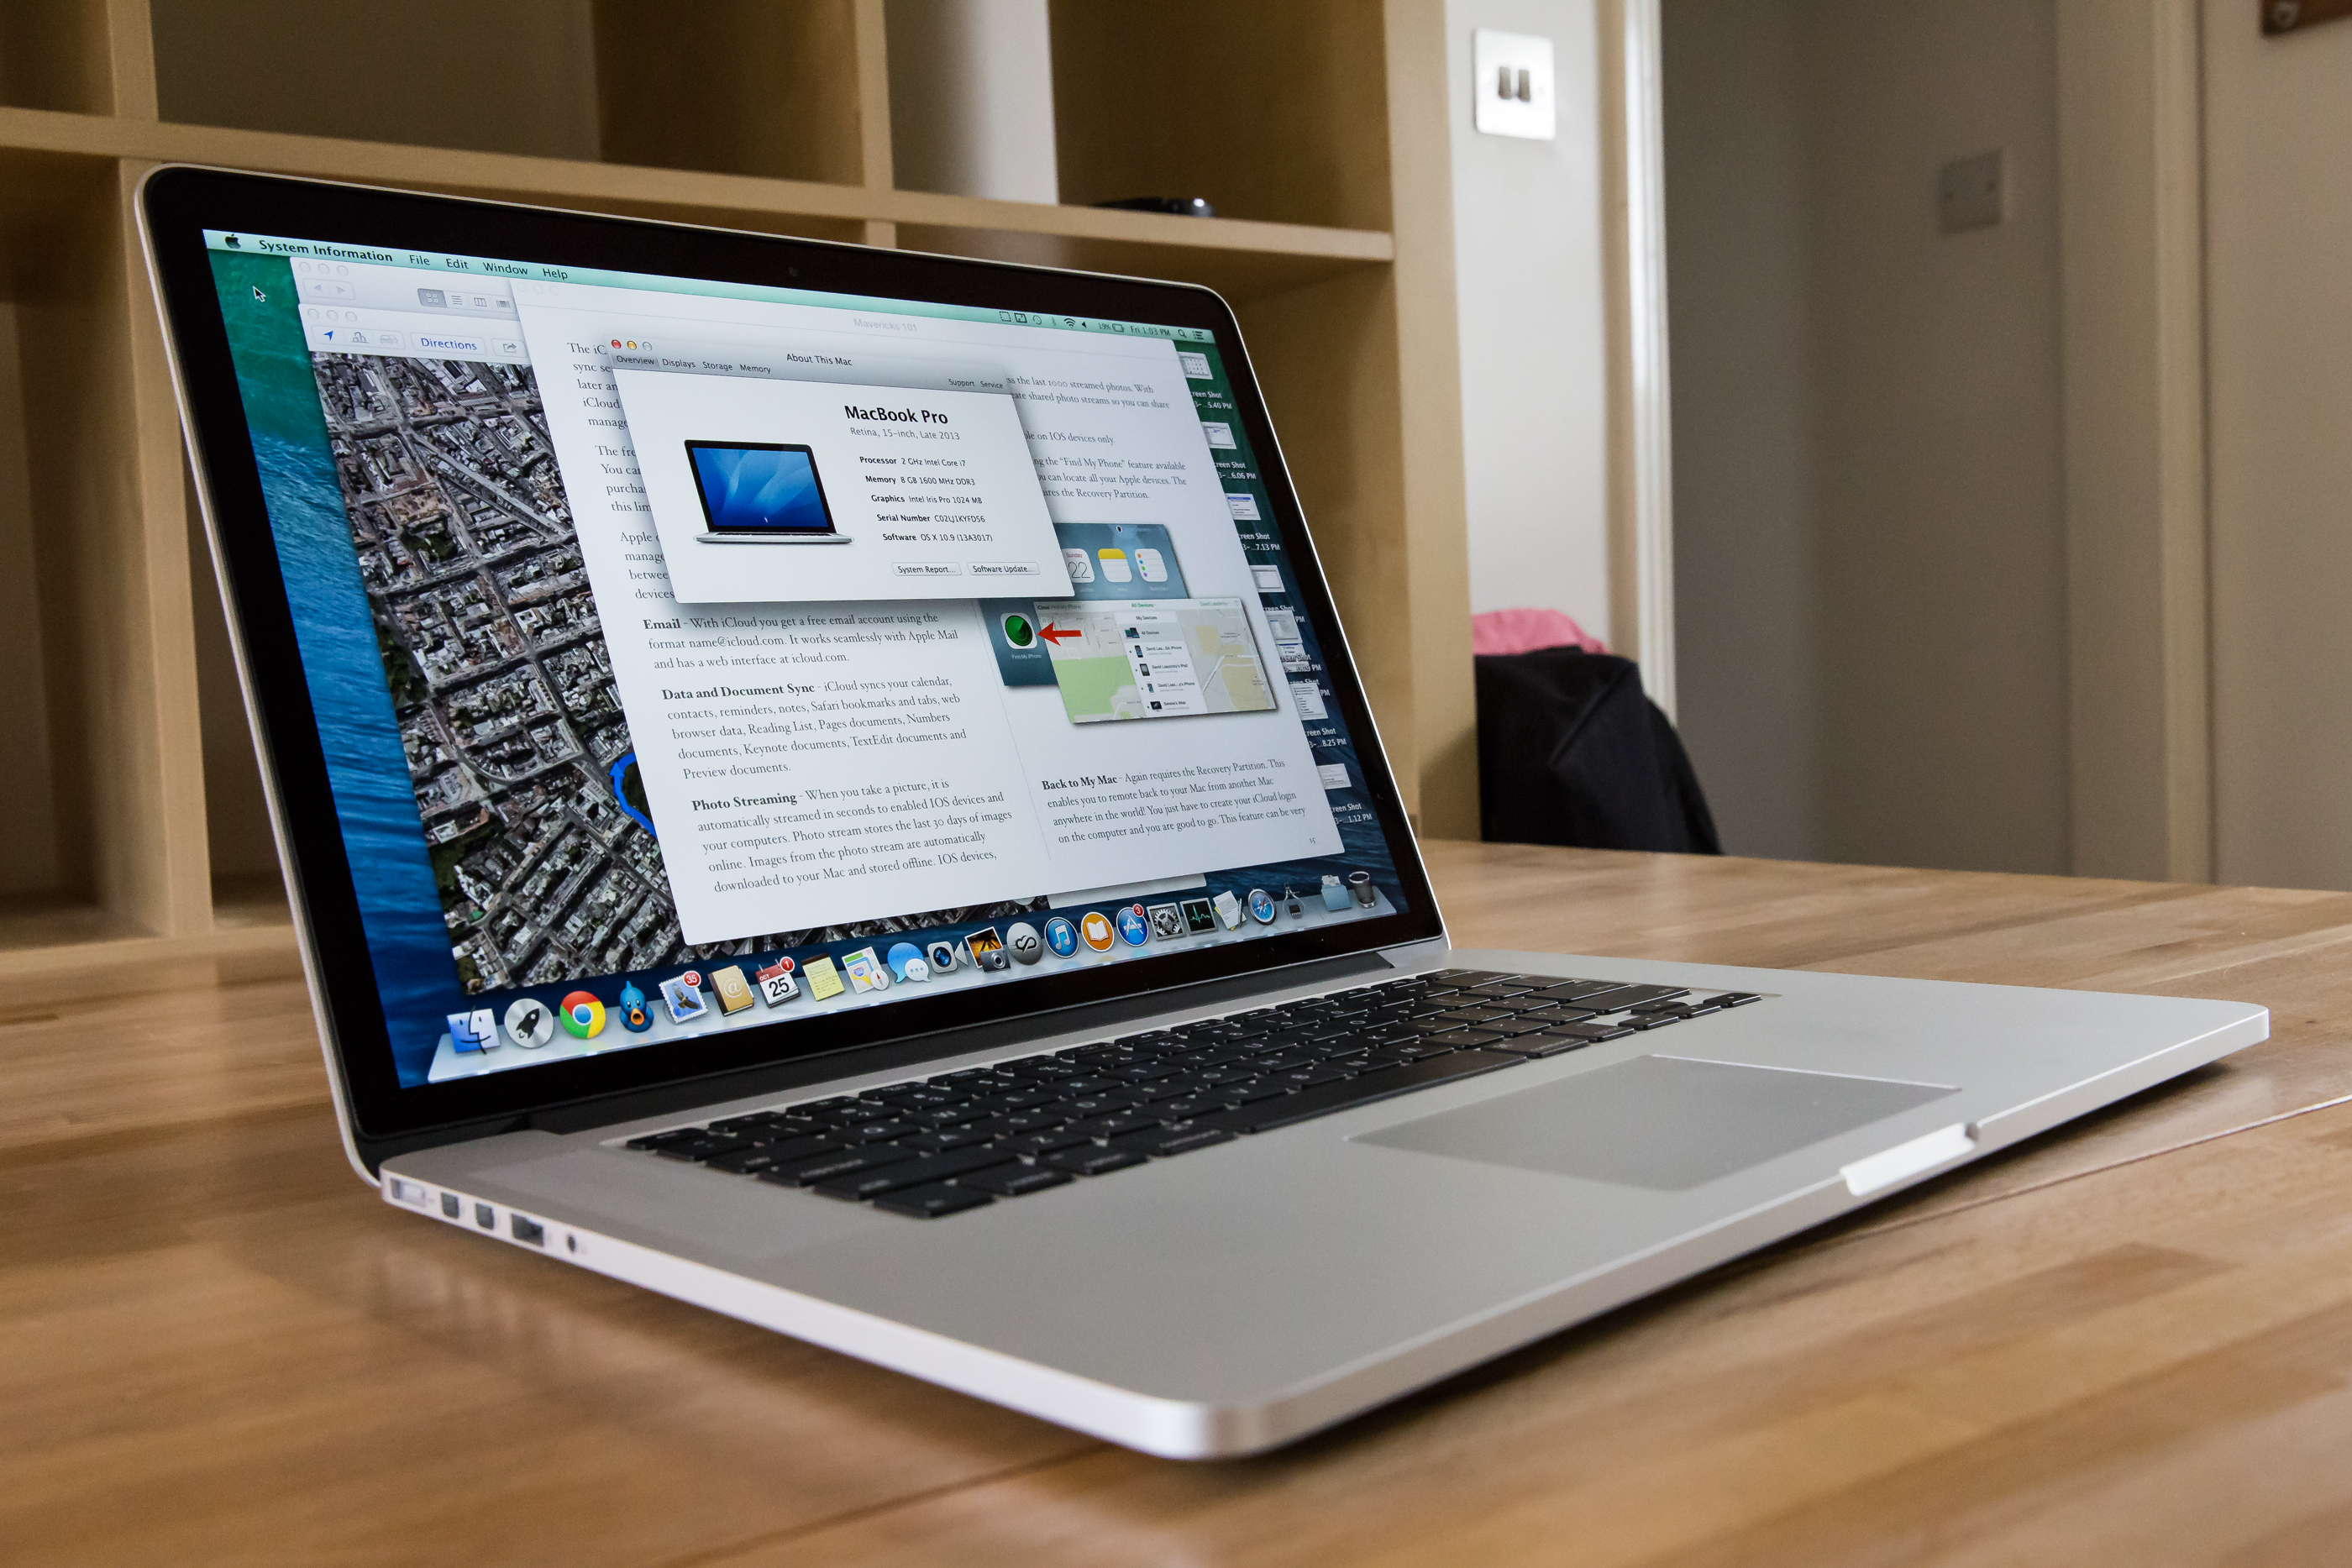 New apple macbook pro 2013 lenovo e15 thinkpad i5